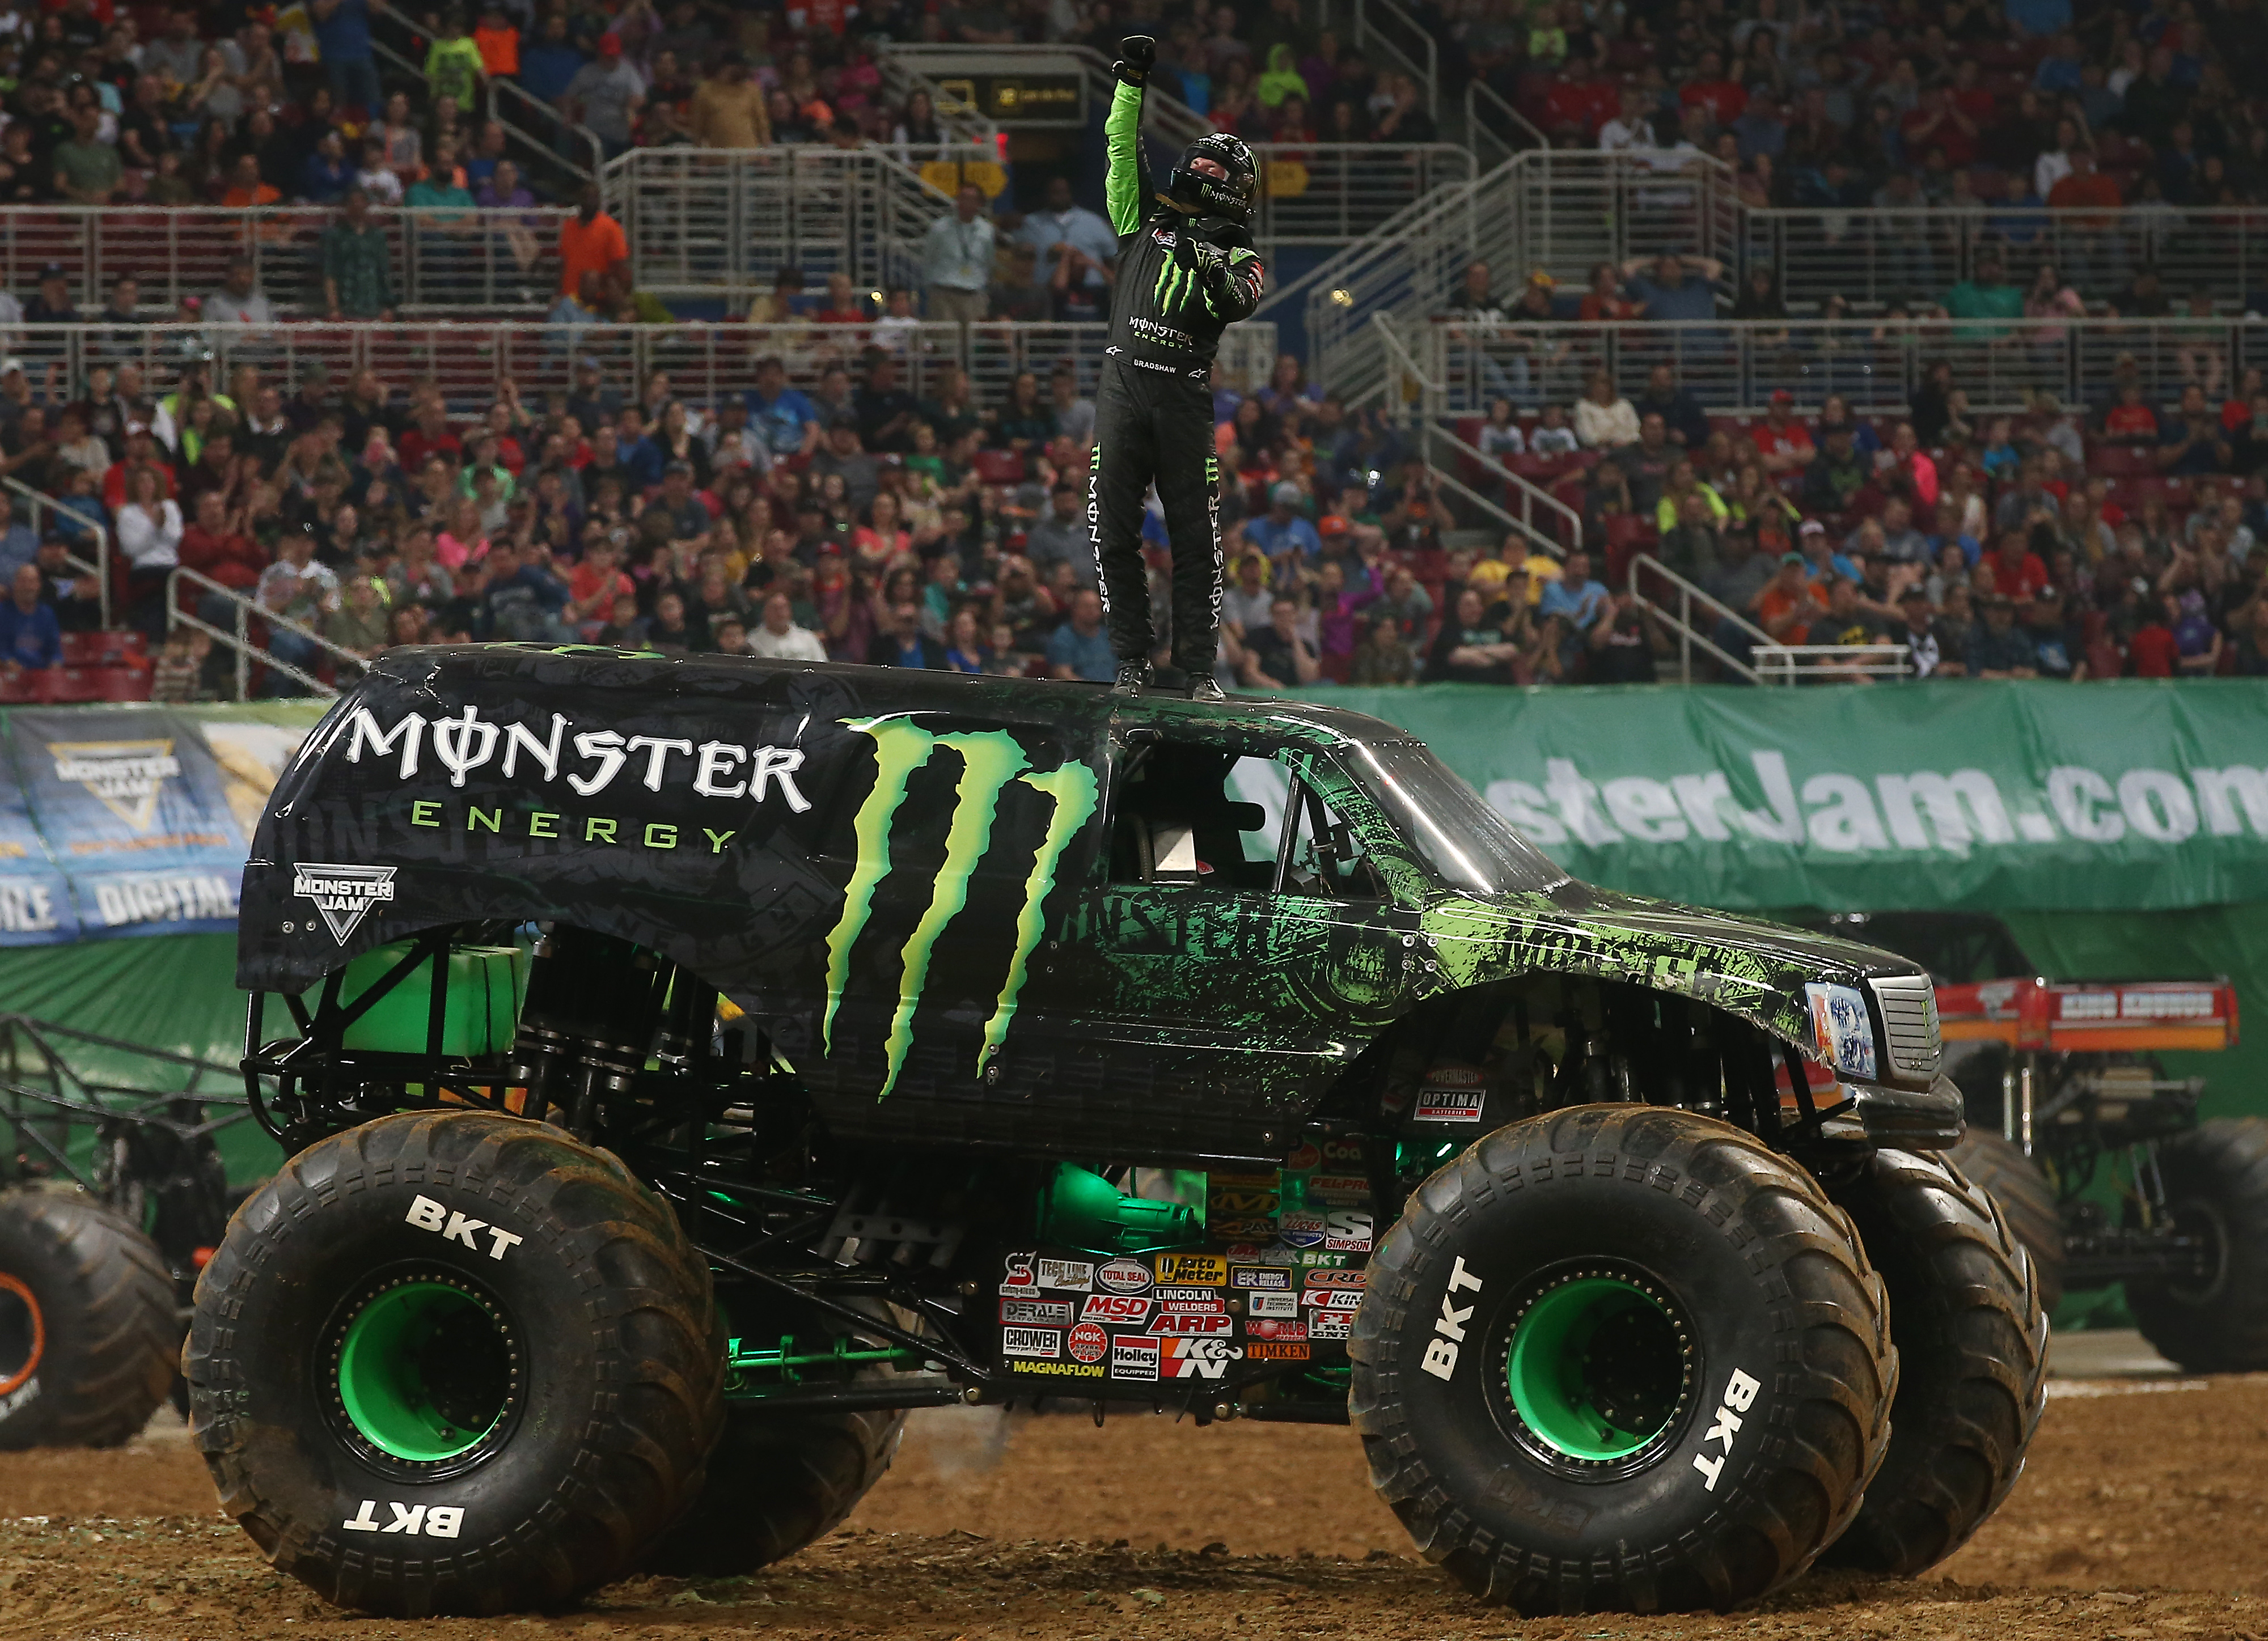 Monster energy monster truck  Monster trucks, Monster energy, Monster